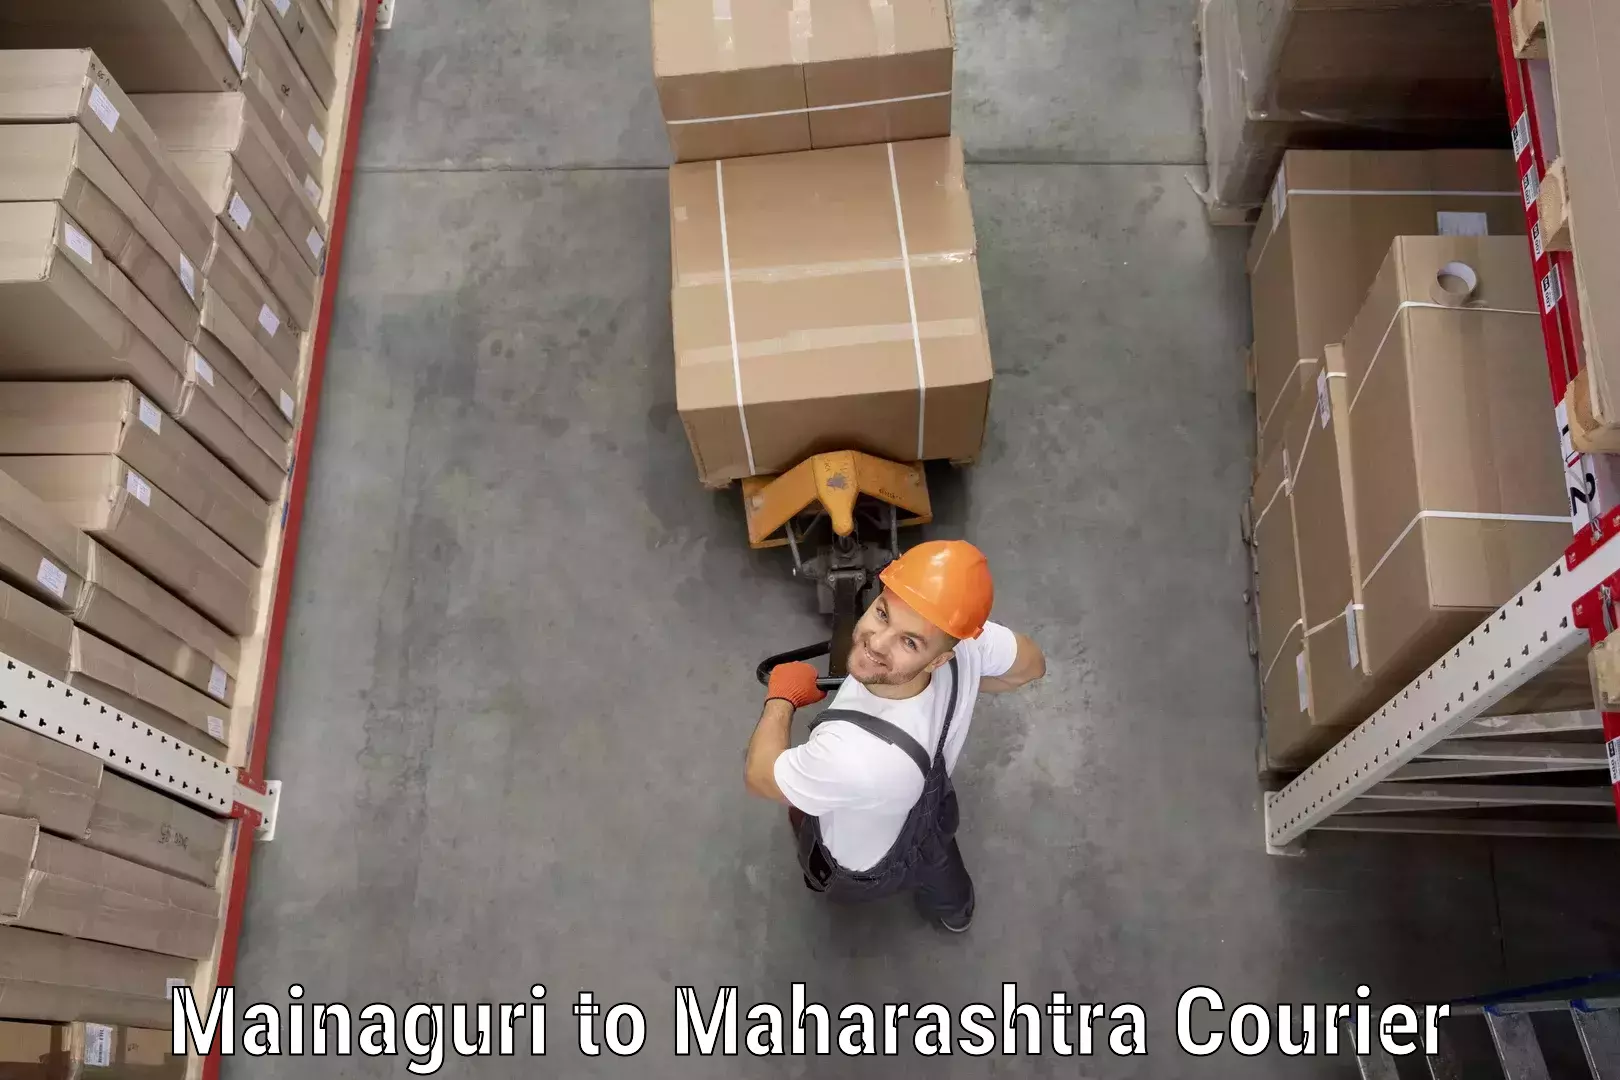 Courier services Mainaguri to Maharashtra